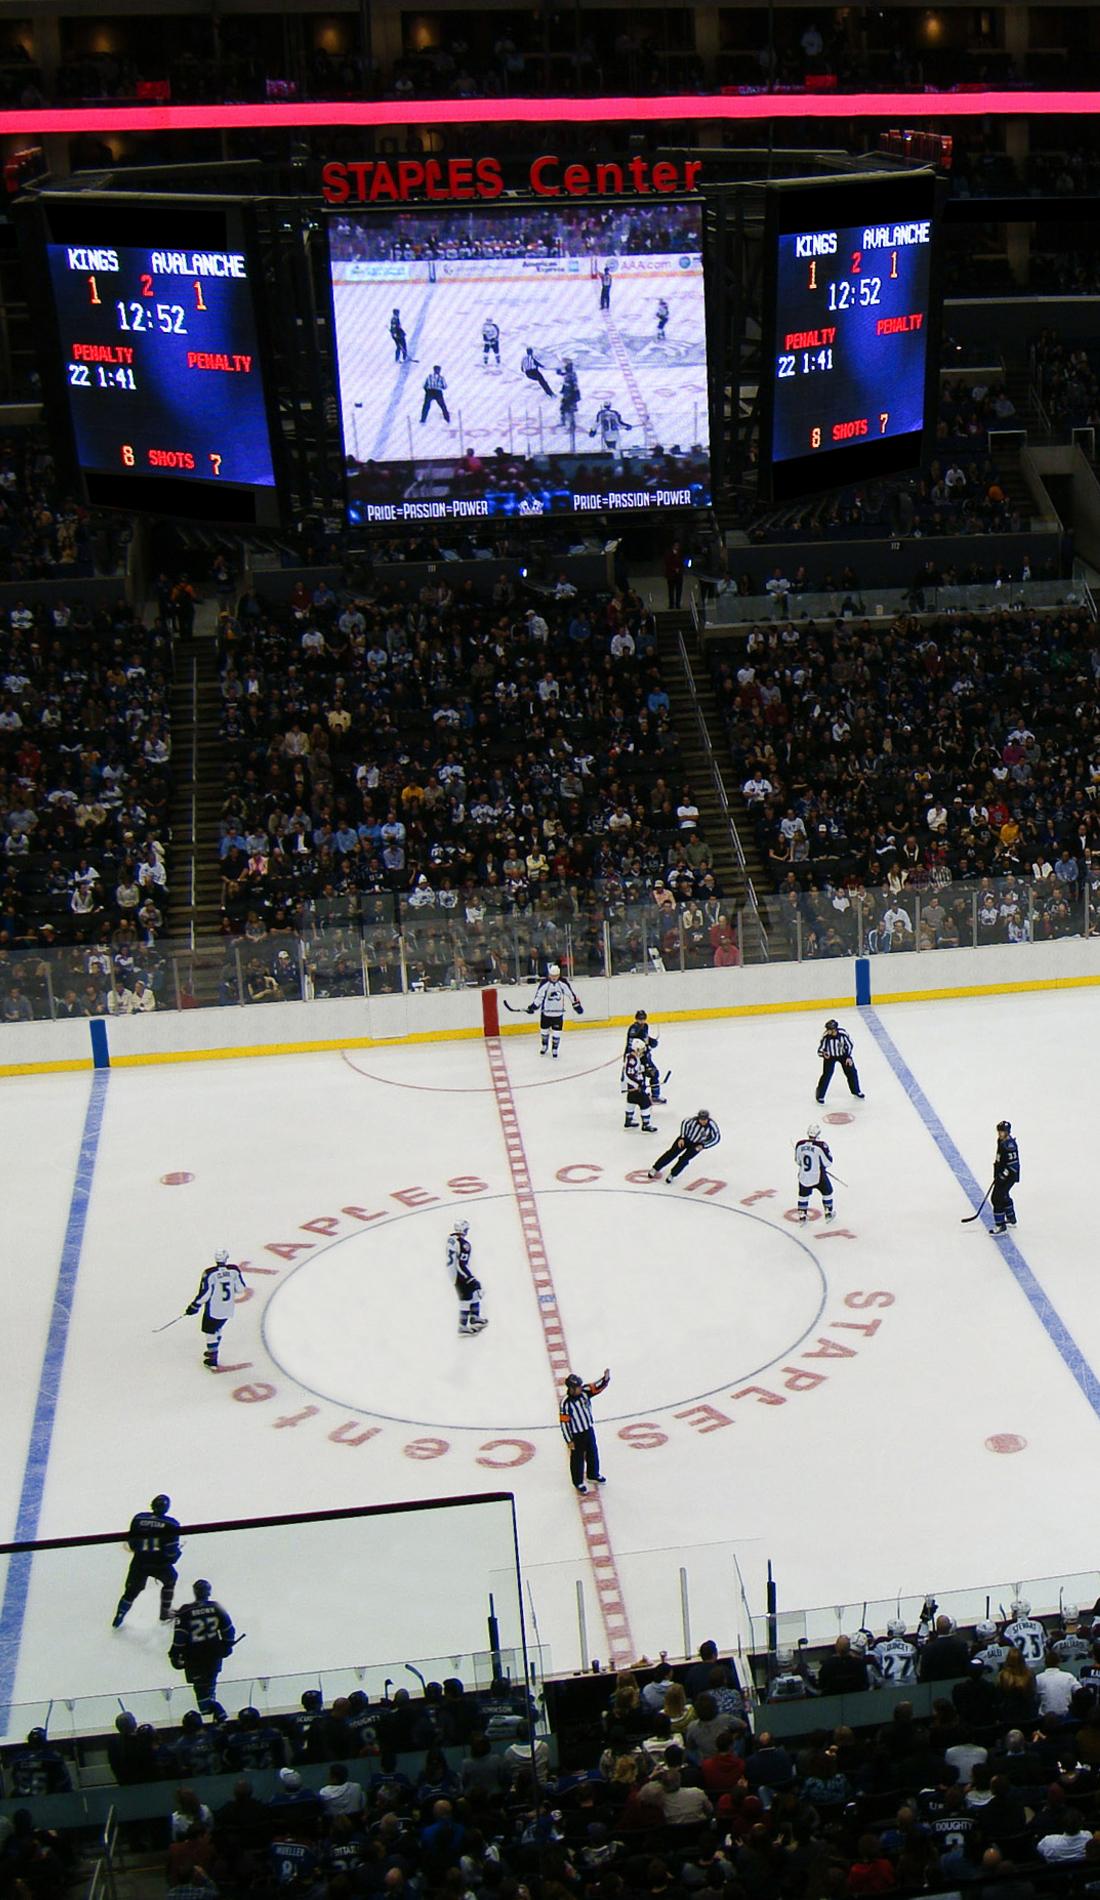 La Stanley Cup en NHL  My American Market : Le Blog